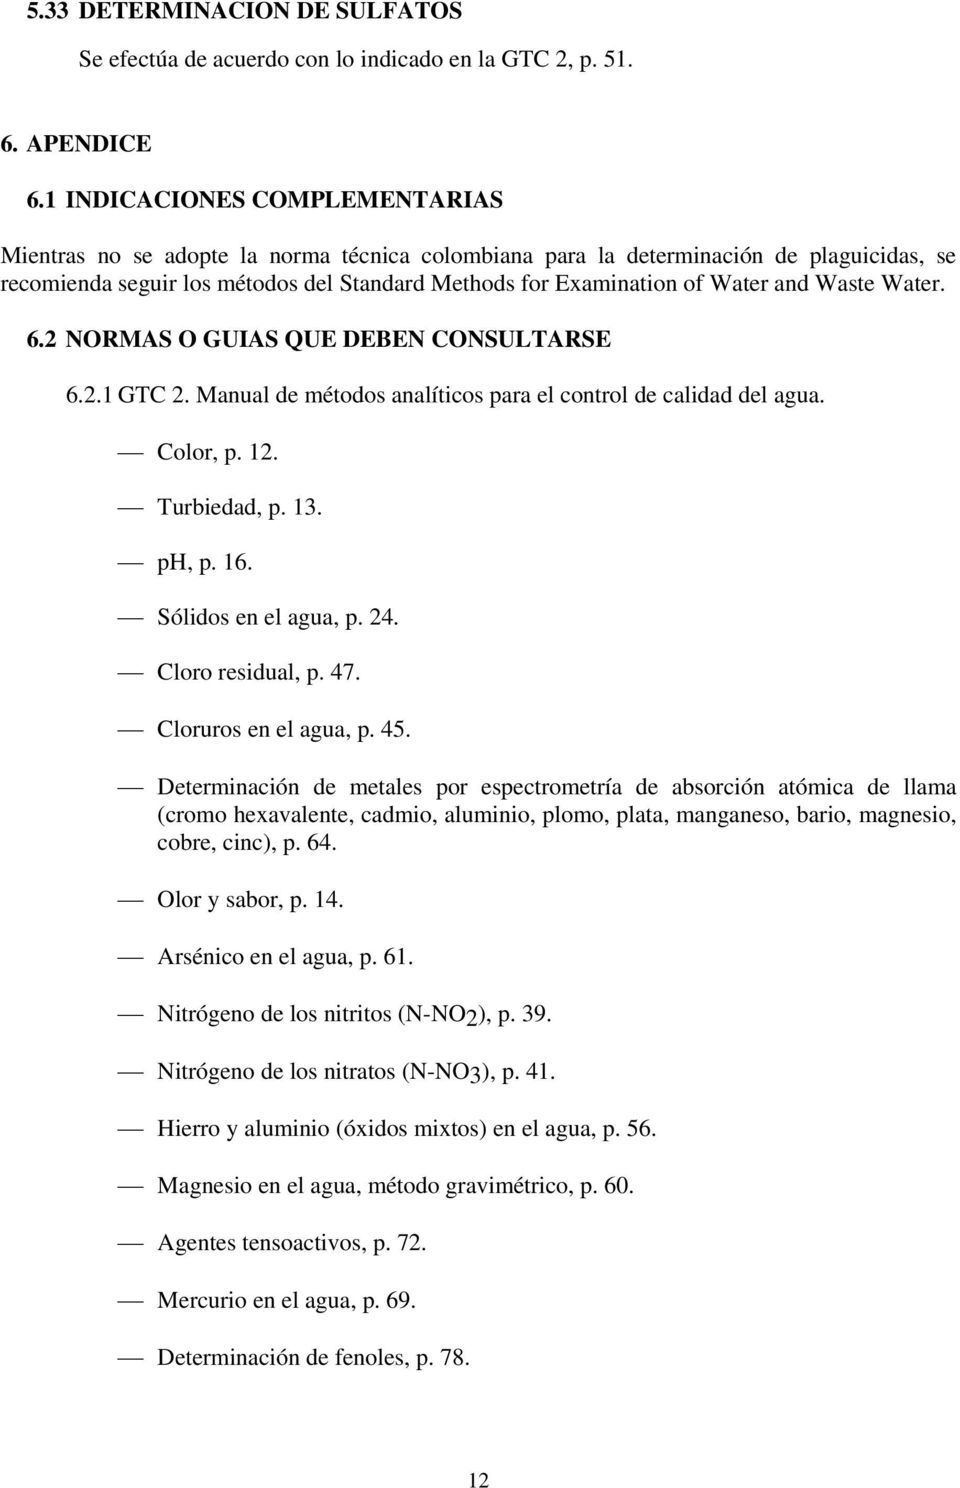 and Waste Water. 6.2 NORMAS O GUIAS QUE DEBEN CONSULTARSE 6.2.1 GTC 2. Manual de métodos analíticos para el control de calidad del agua. Color, p. 12. Turbiedad, p. 13. ph, p. 16.